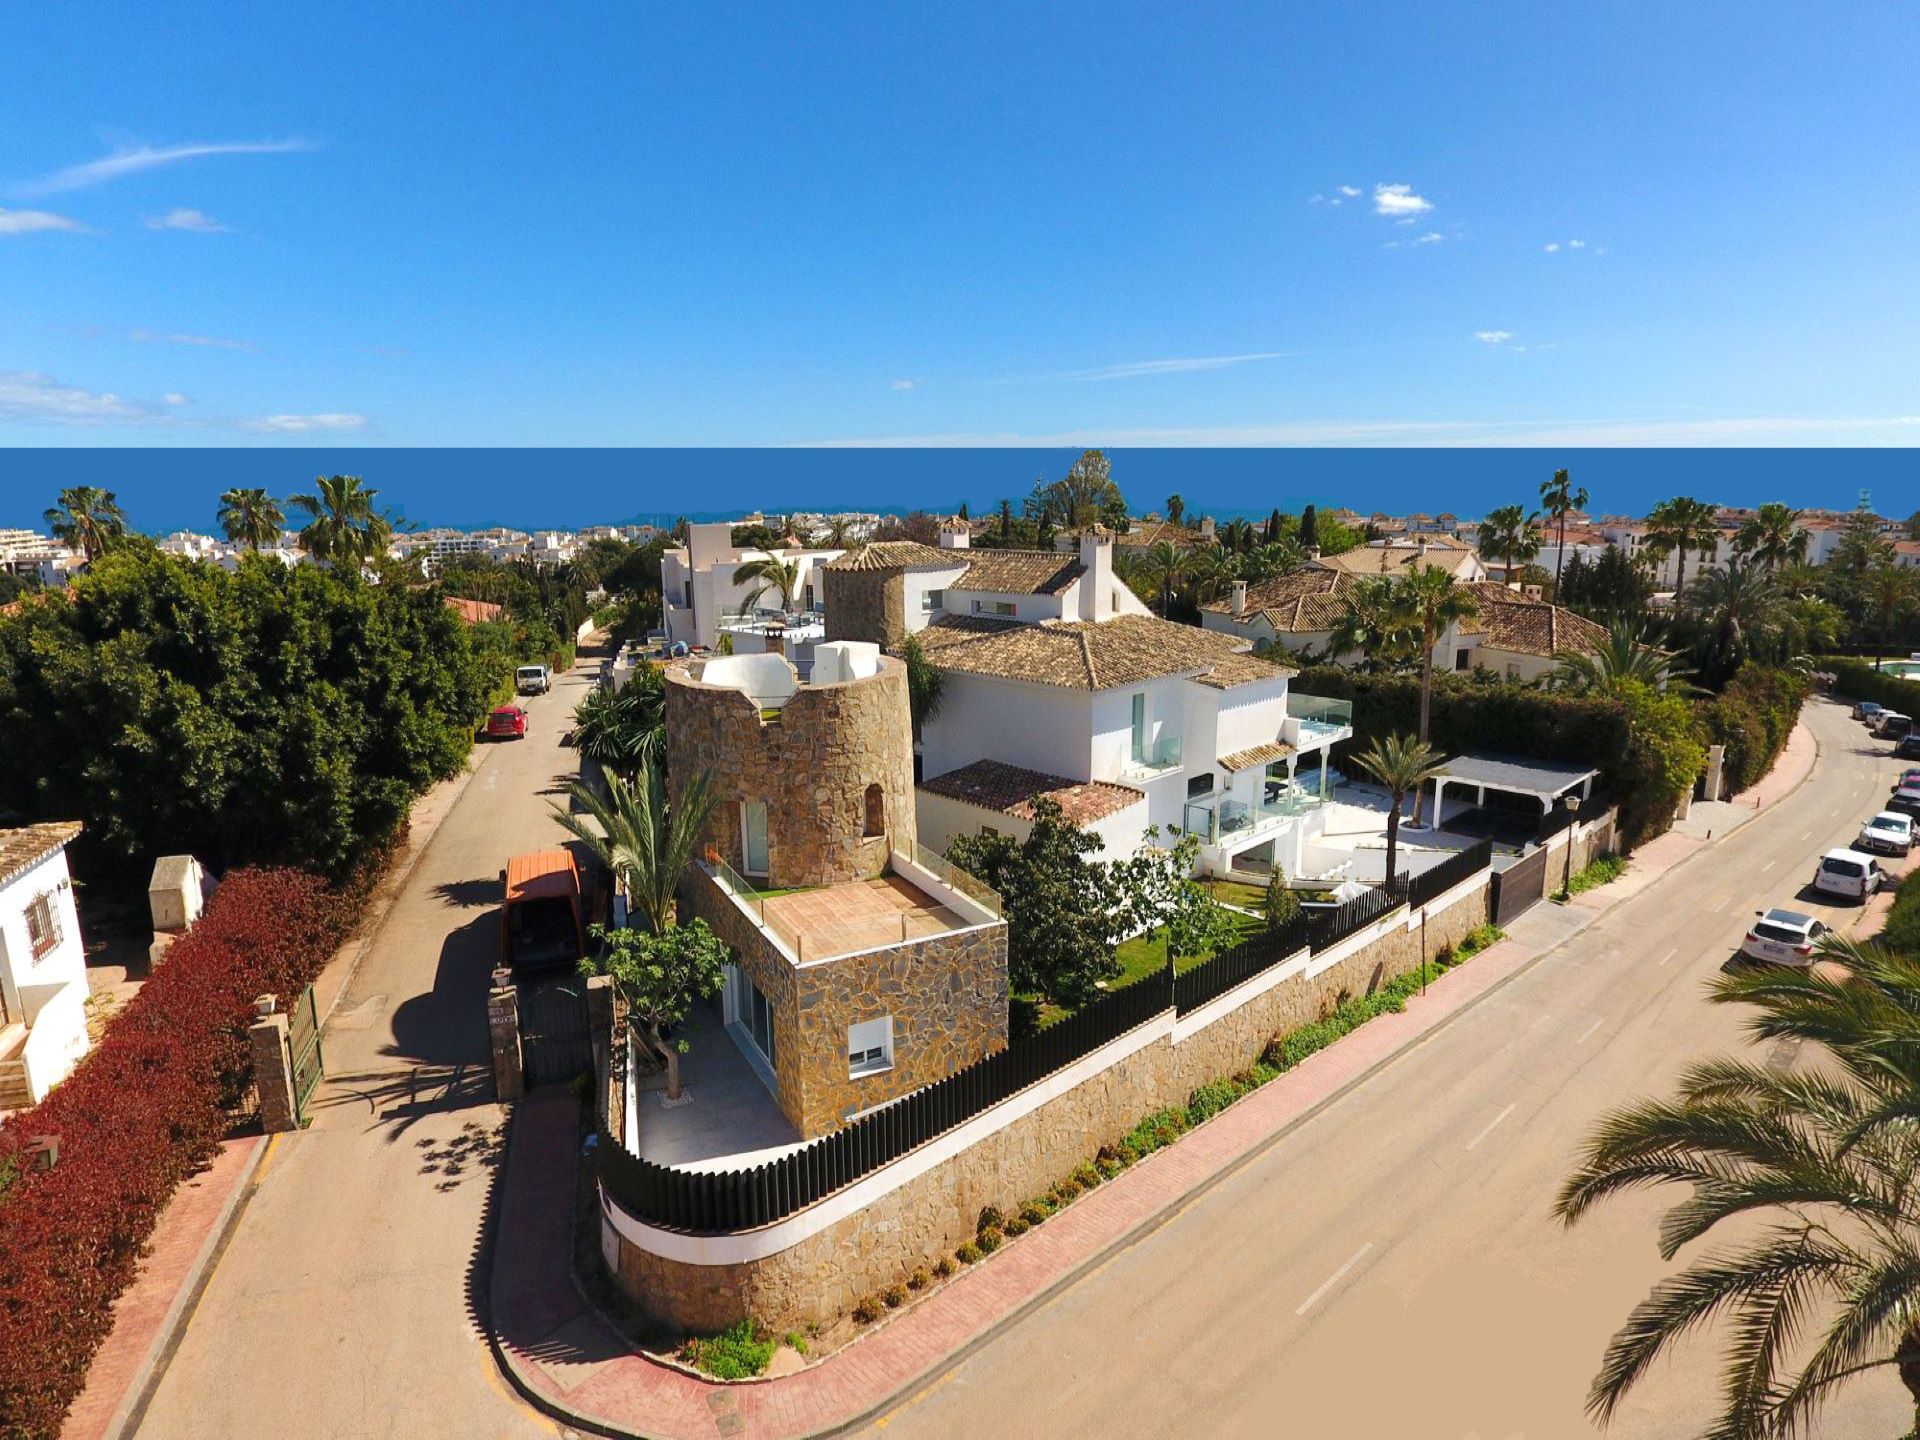 Magnificent villa with sea views | Engel & Völkers Marbella